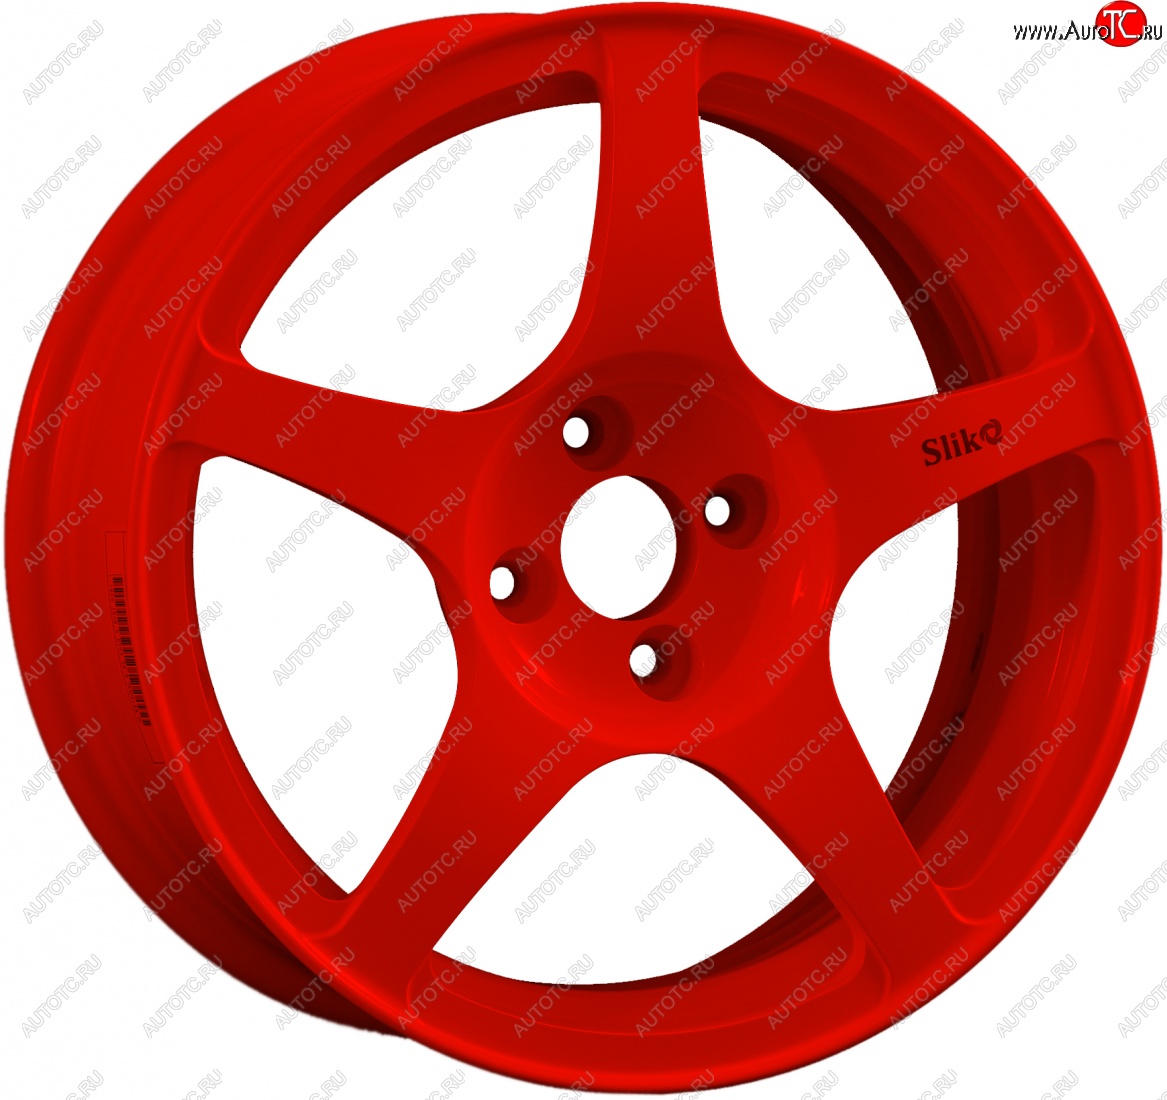 10 349 р. Кованый диск Slik classik R16x6.5 Красный (RED) 6.5x16 Renault Clio KR рестайлинг универсал (2009-2013) 4x100.0xDIA60.1xET40.0 (Цвет: RED)